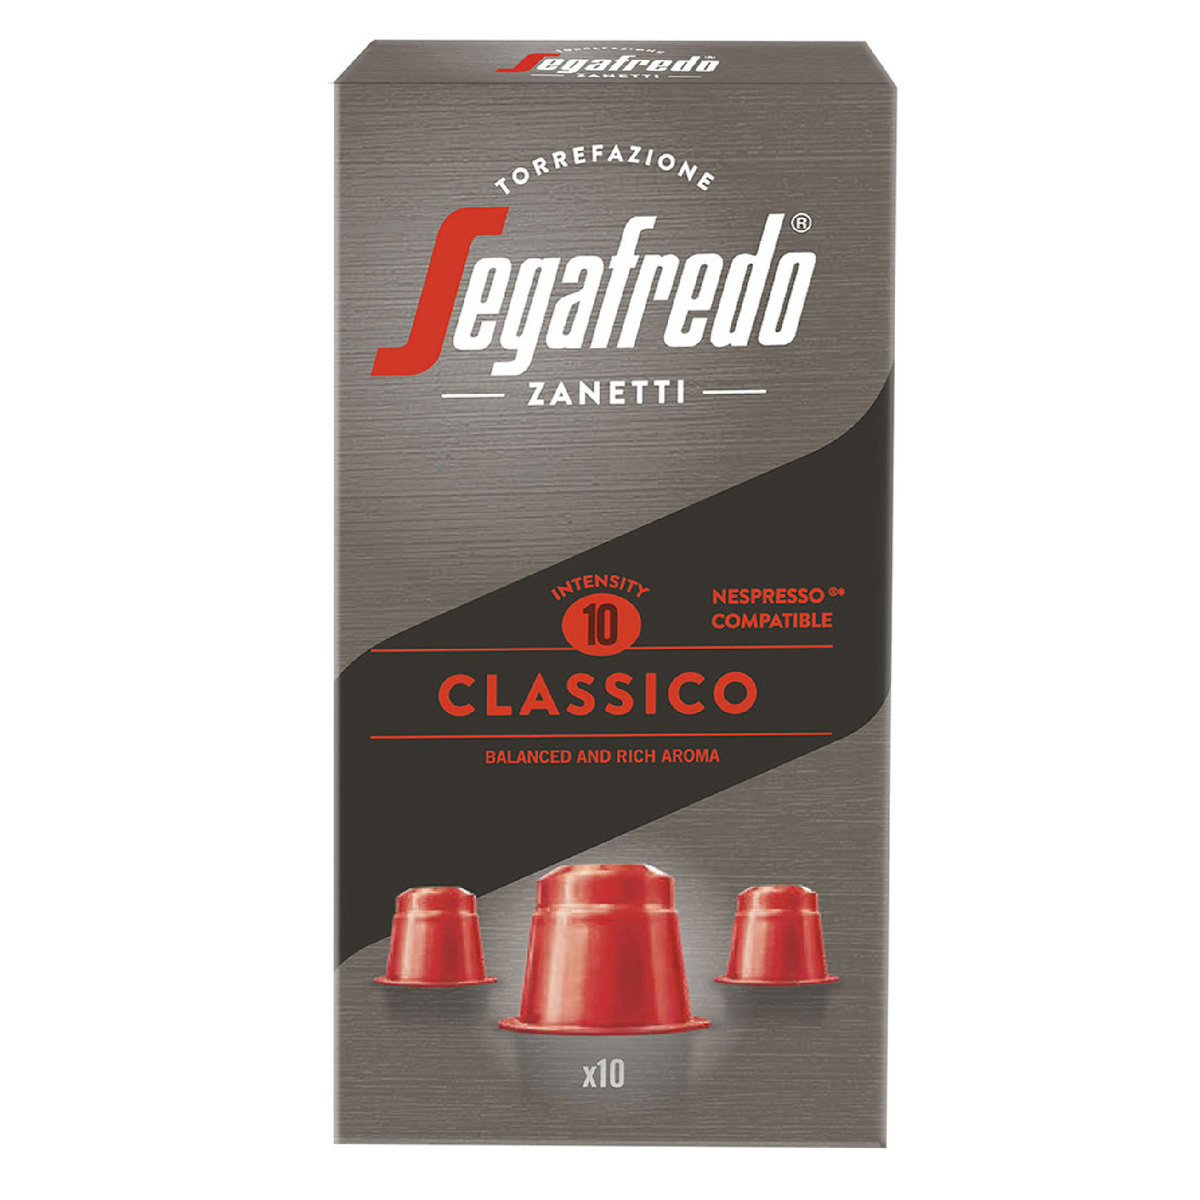 Segafredo Zanetti Classico Coffee 10 pcs 51 g